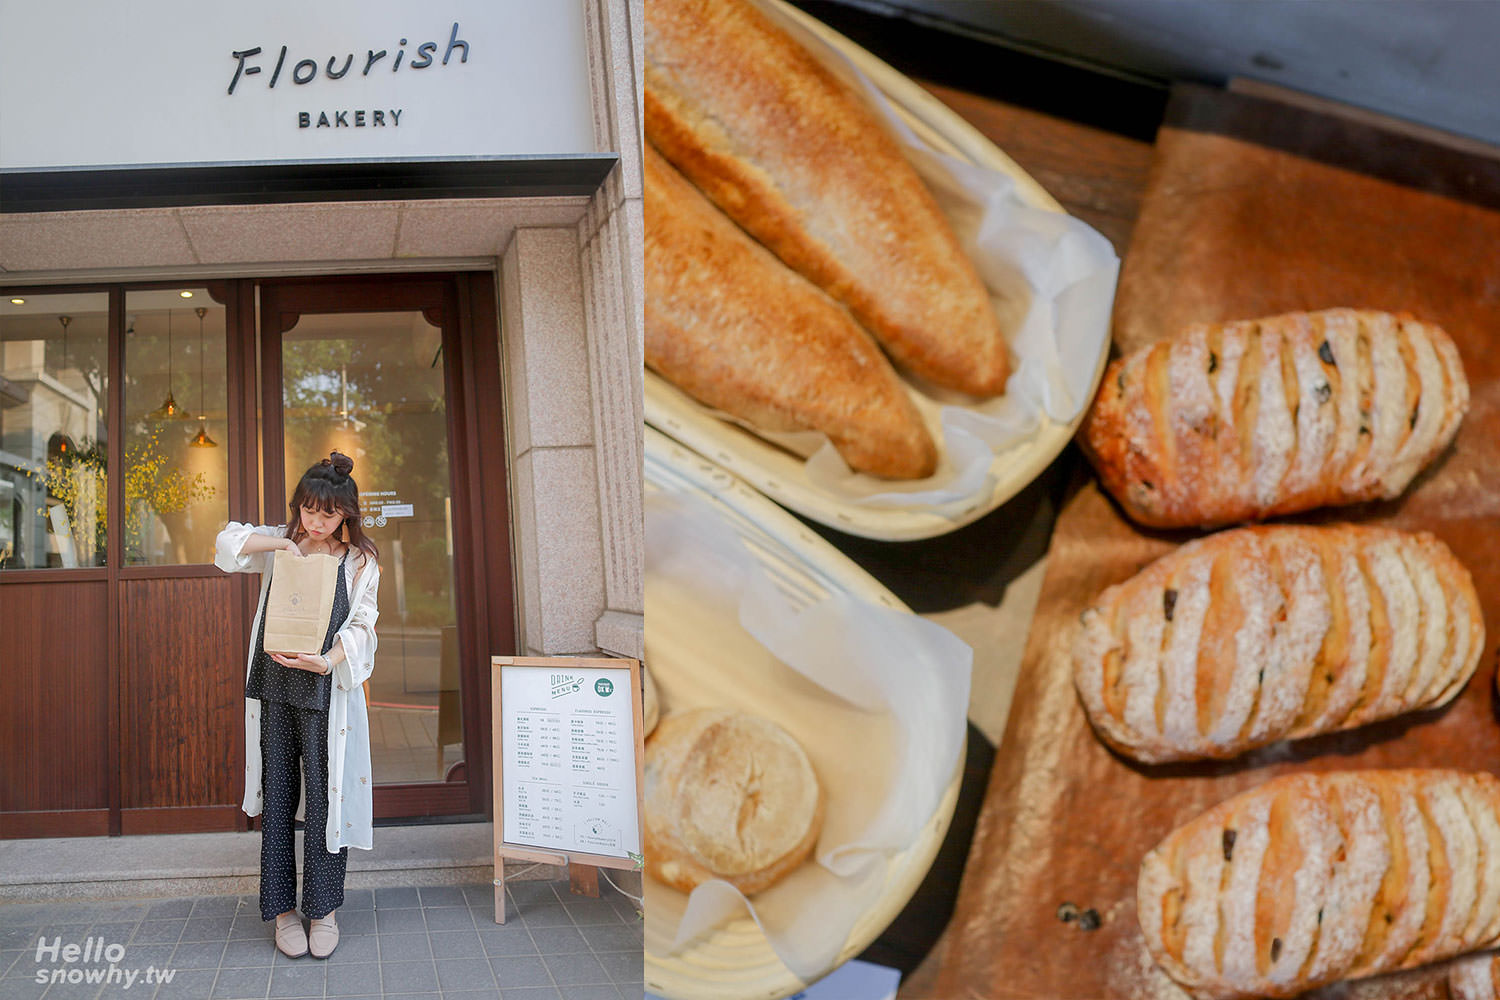 板橋美食,FlourishBakery花咲,現做麵包,IG熱門打卡麵包店,板橋早午餐,板橋